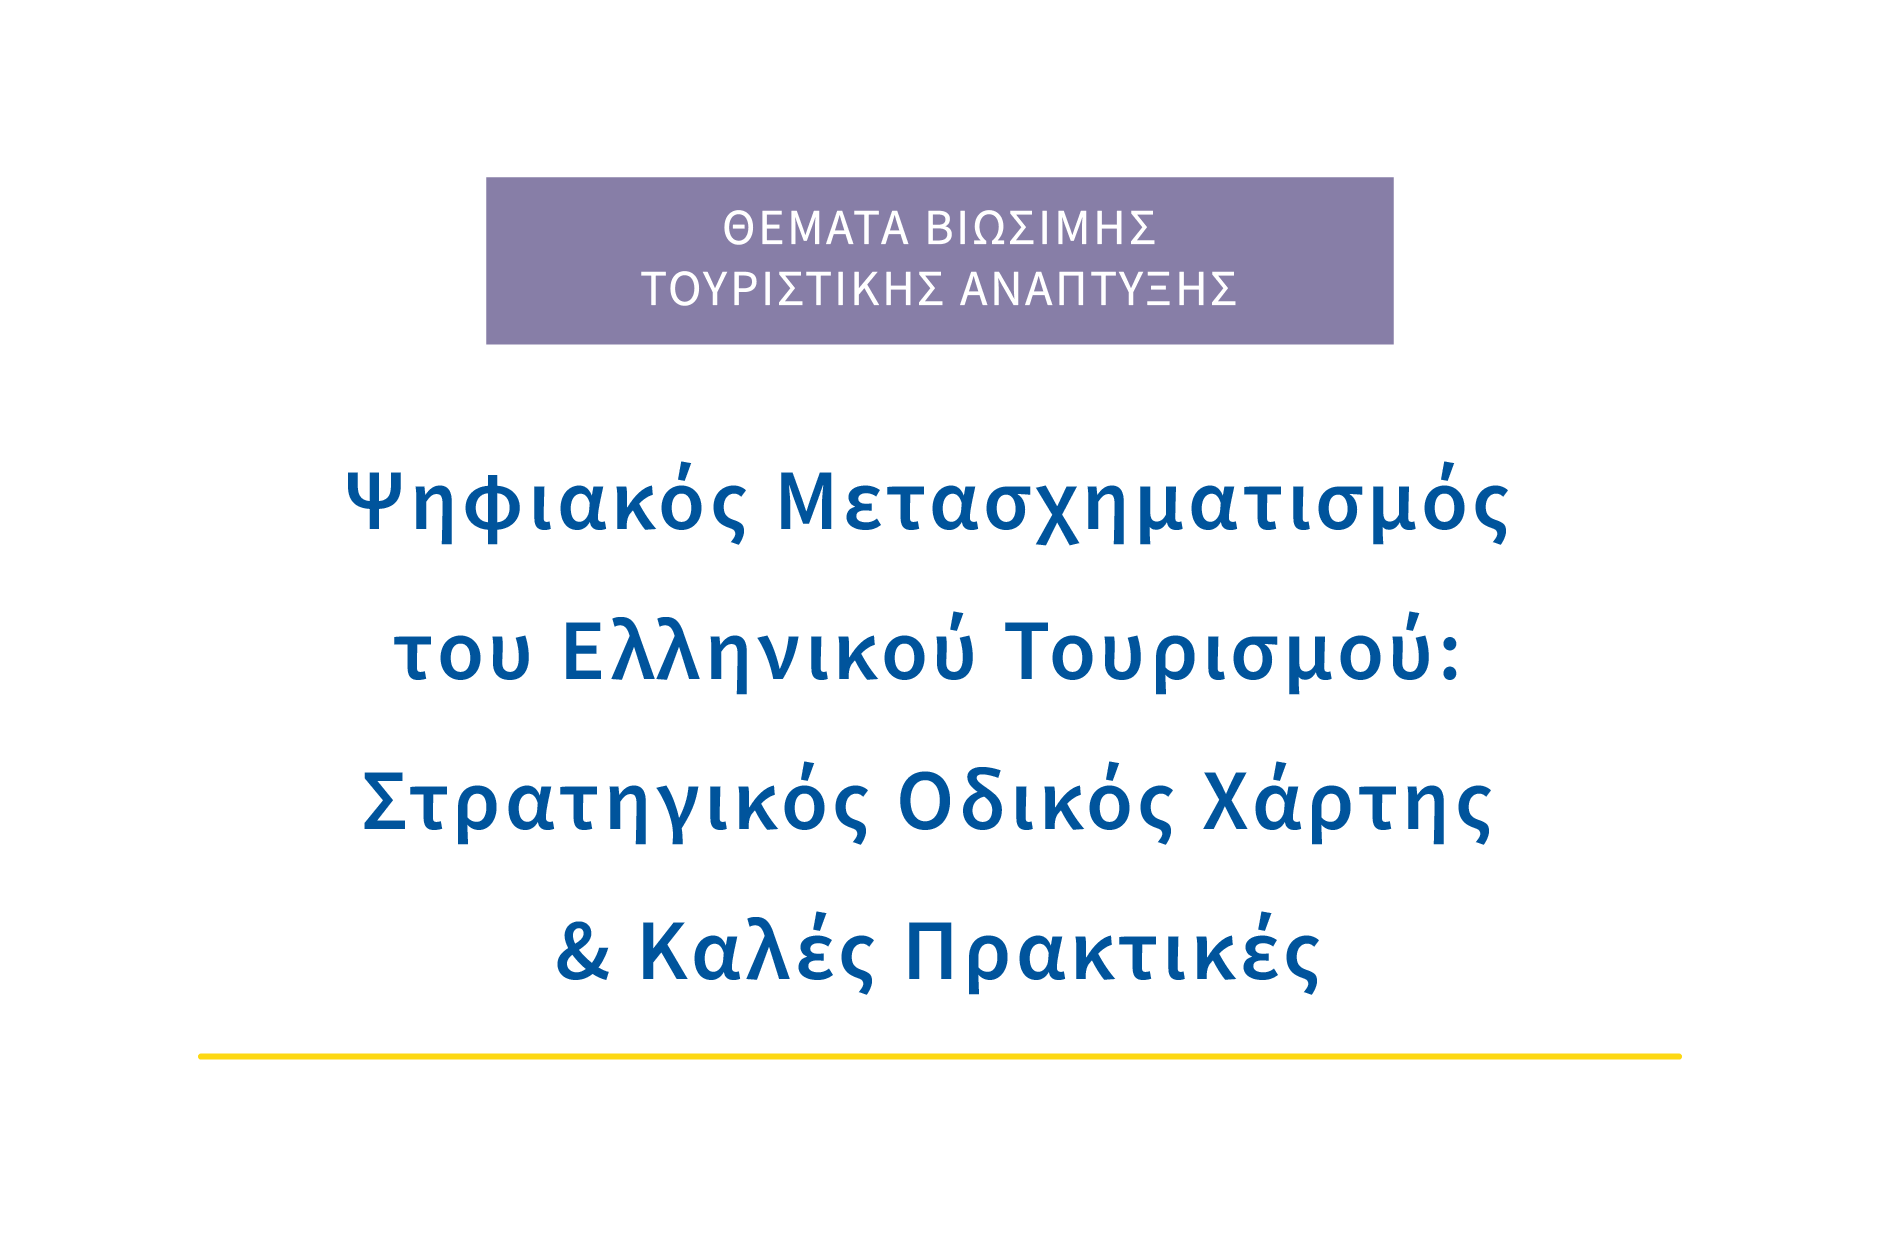 Ψηφιακός Μετασχηματισμός του Ελληνικού Τουρισμού: Στρατηγικός Οδικός Χάρτης & καλές πρακτικές